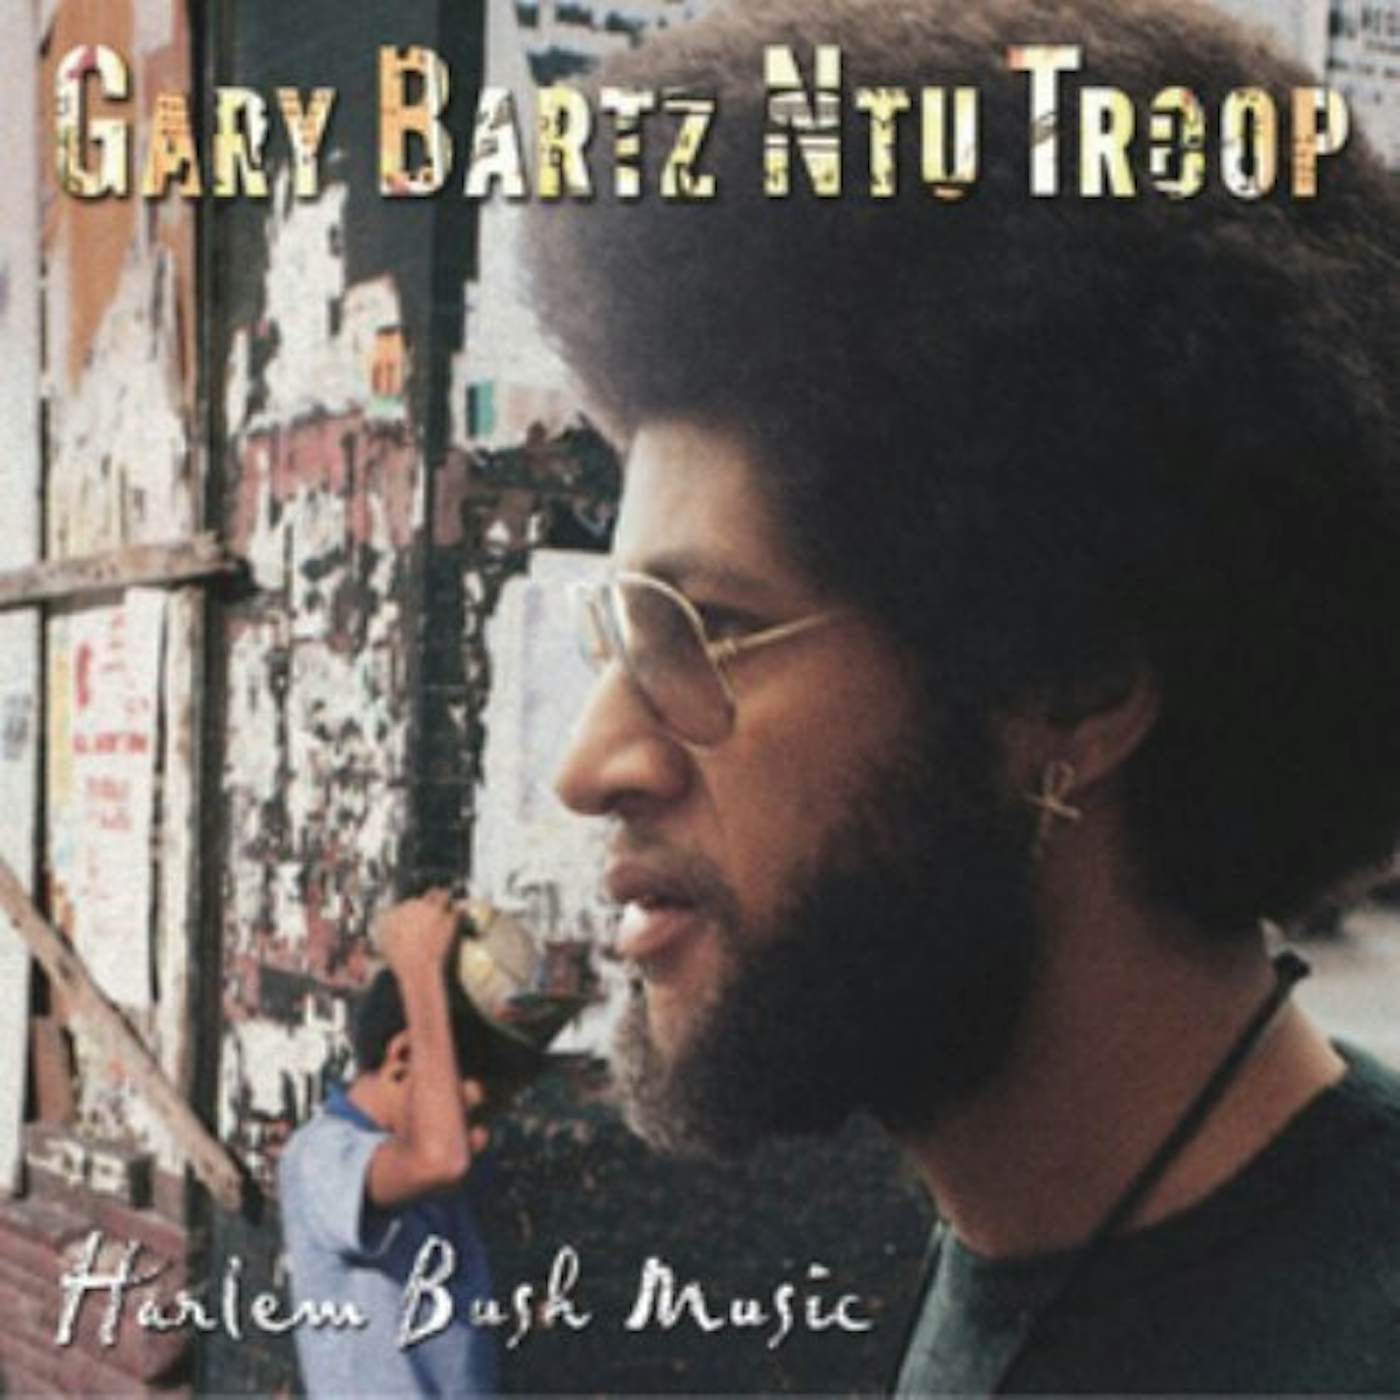 Gary Bartz Ntu Troop HARLEM BUSH MUSIC CD